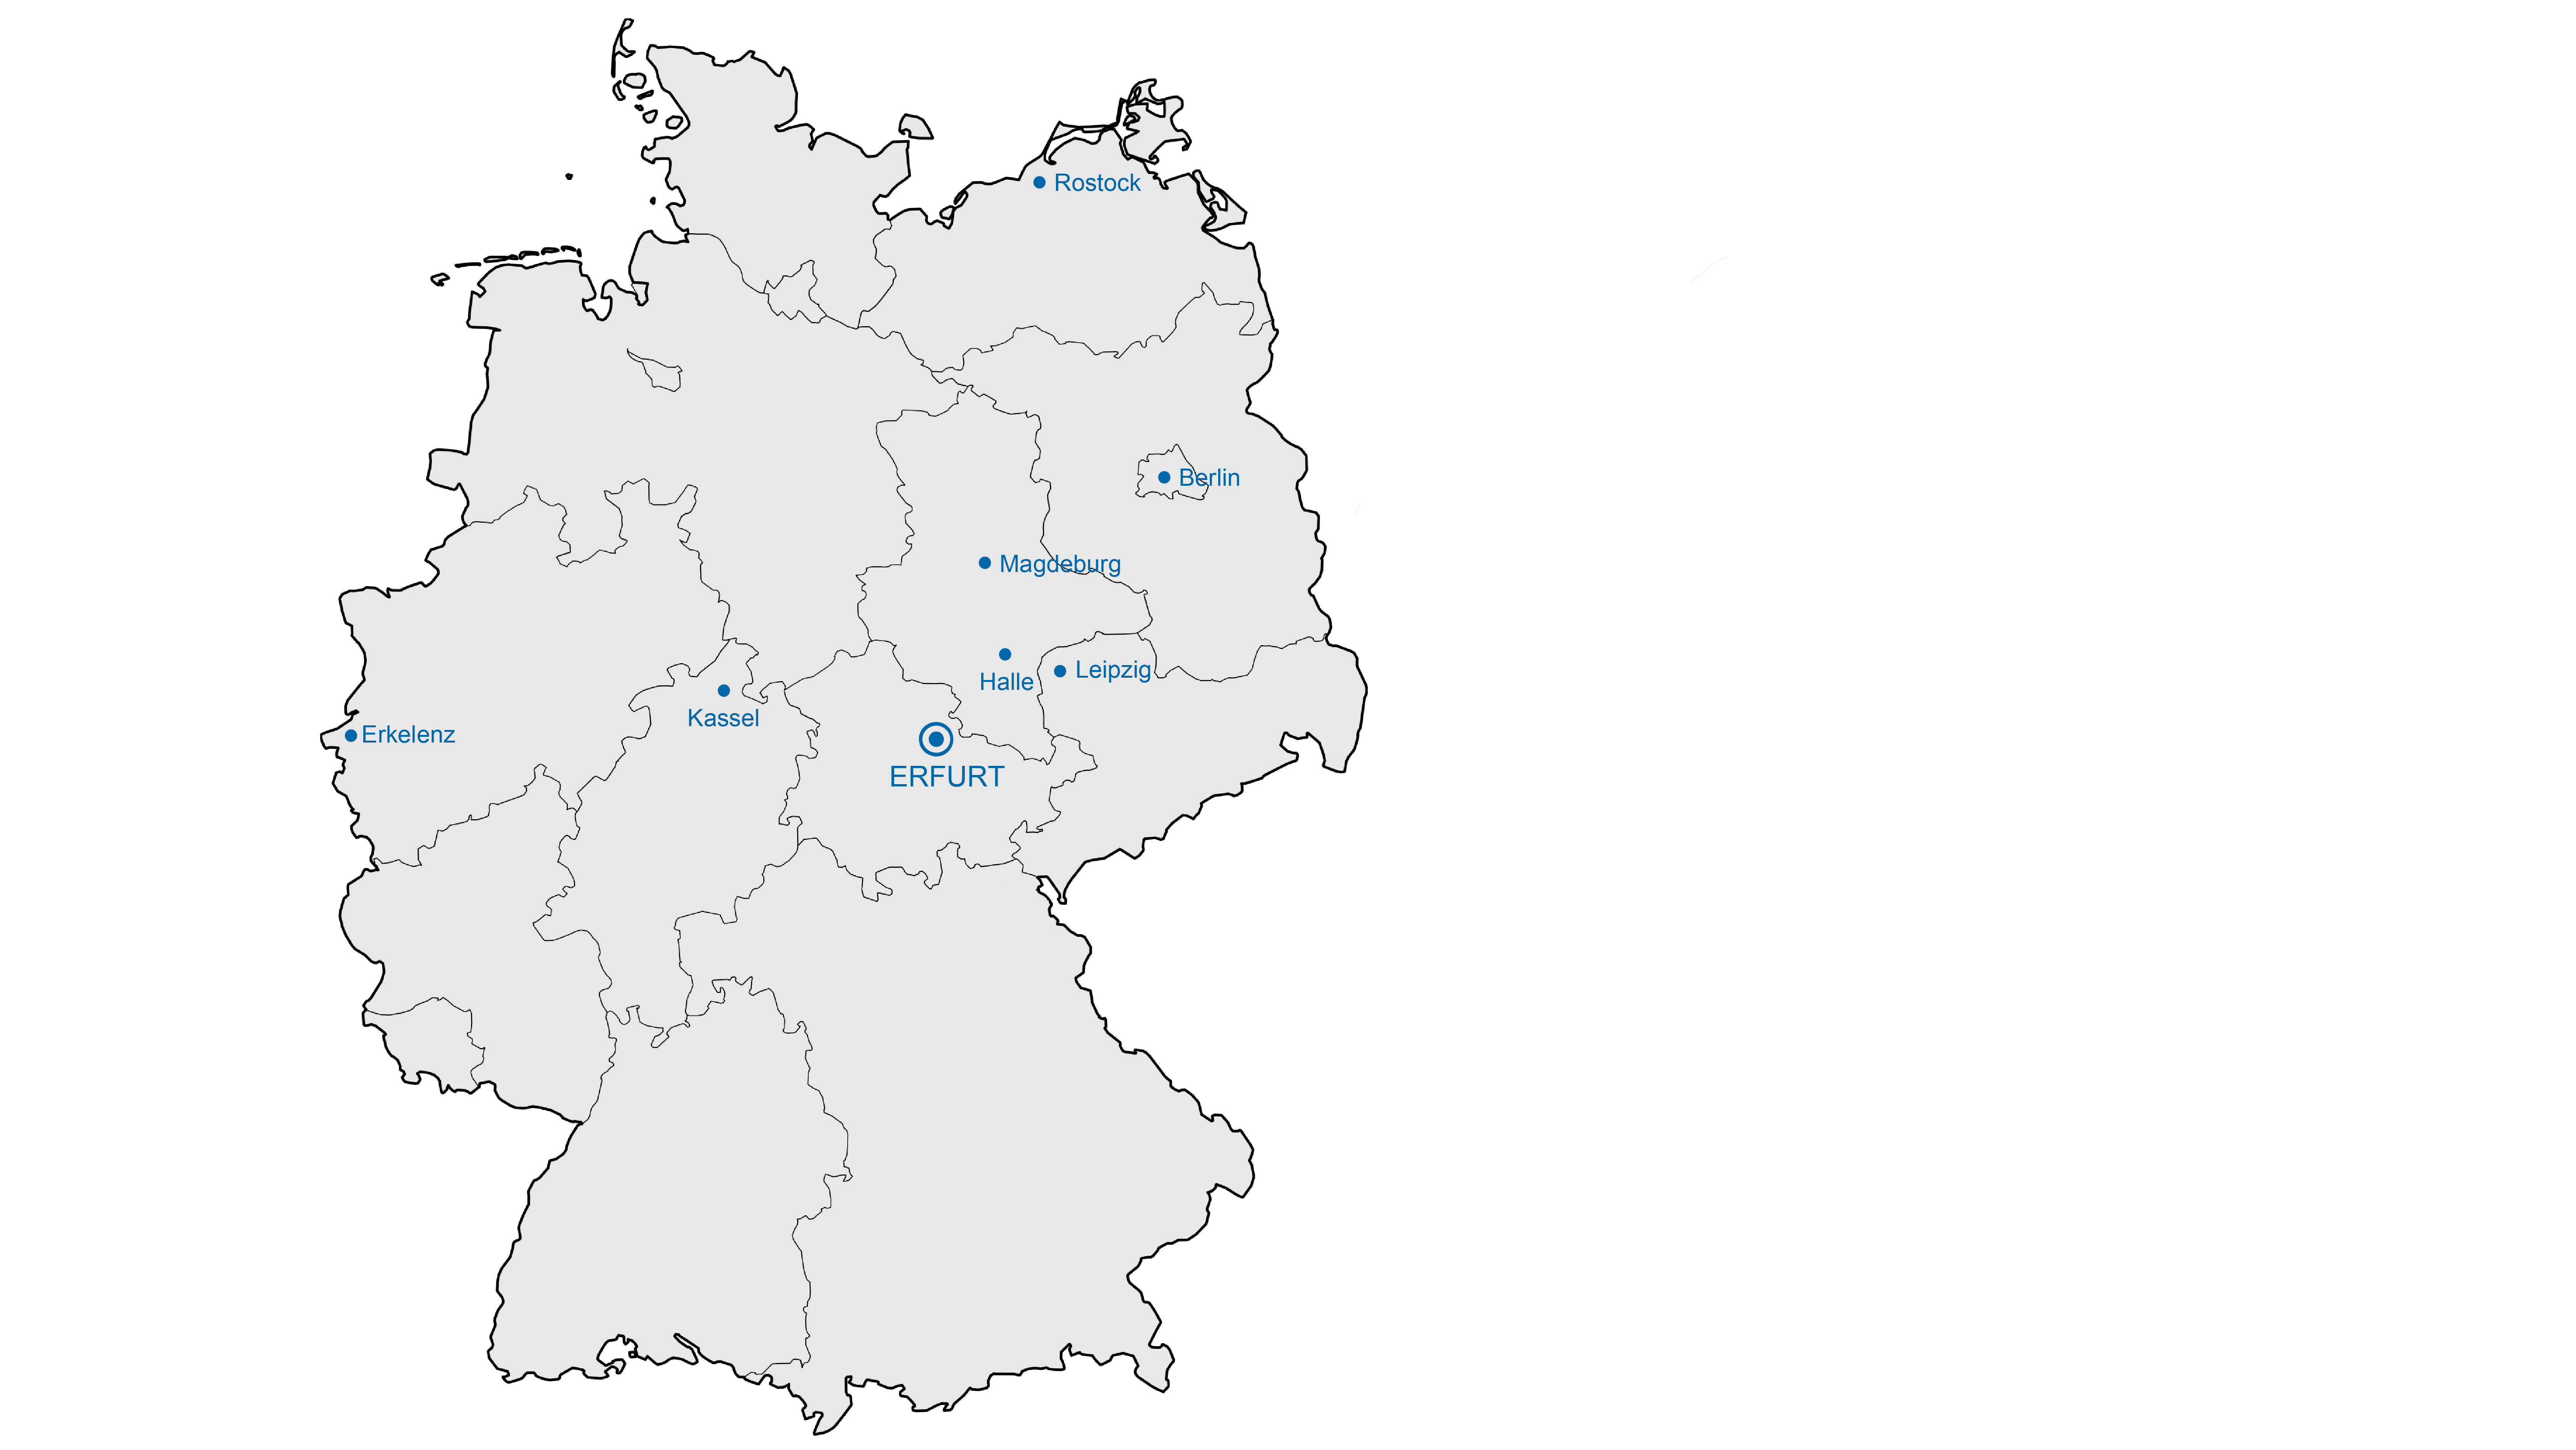 Fachhochschule Erfurt - ein weiterer Standort der Kursangebote von Zertifizierter Passivhausplaner.